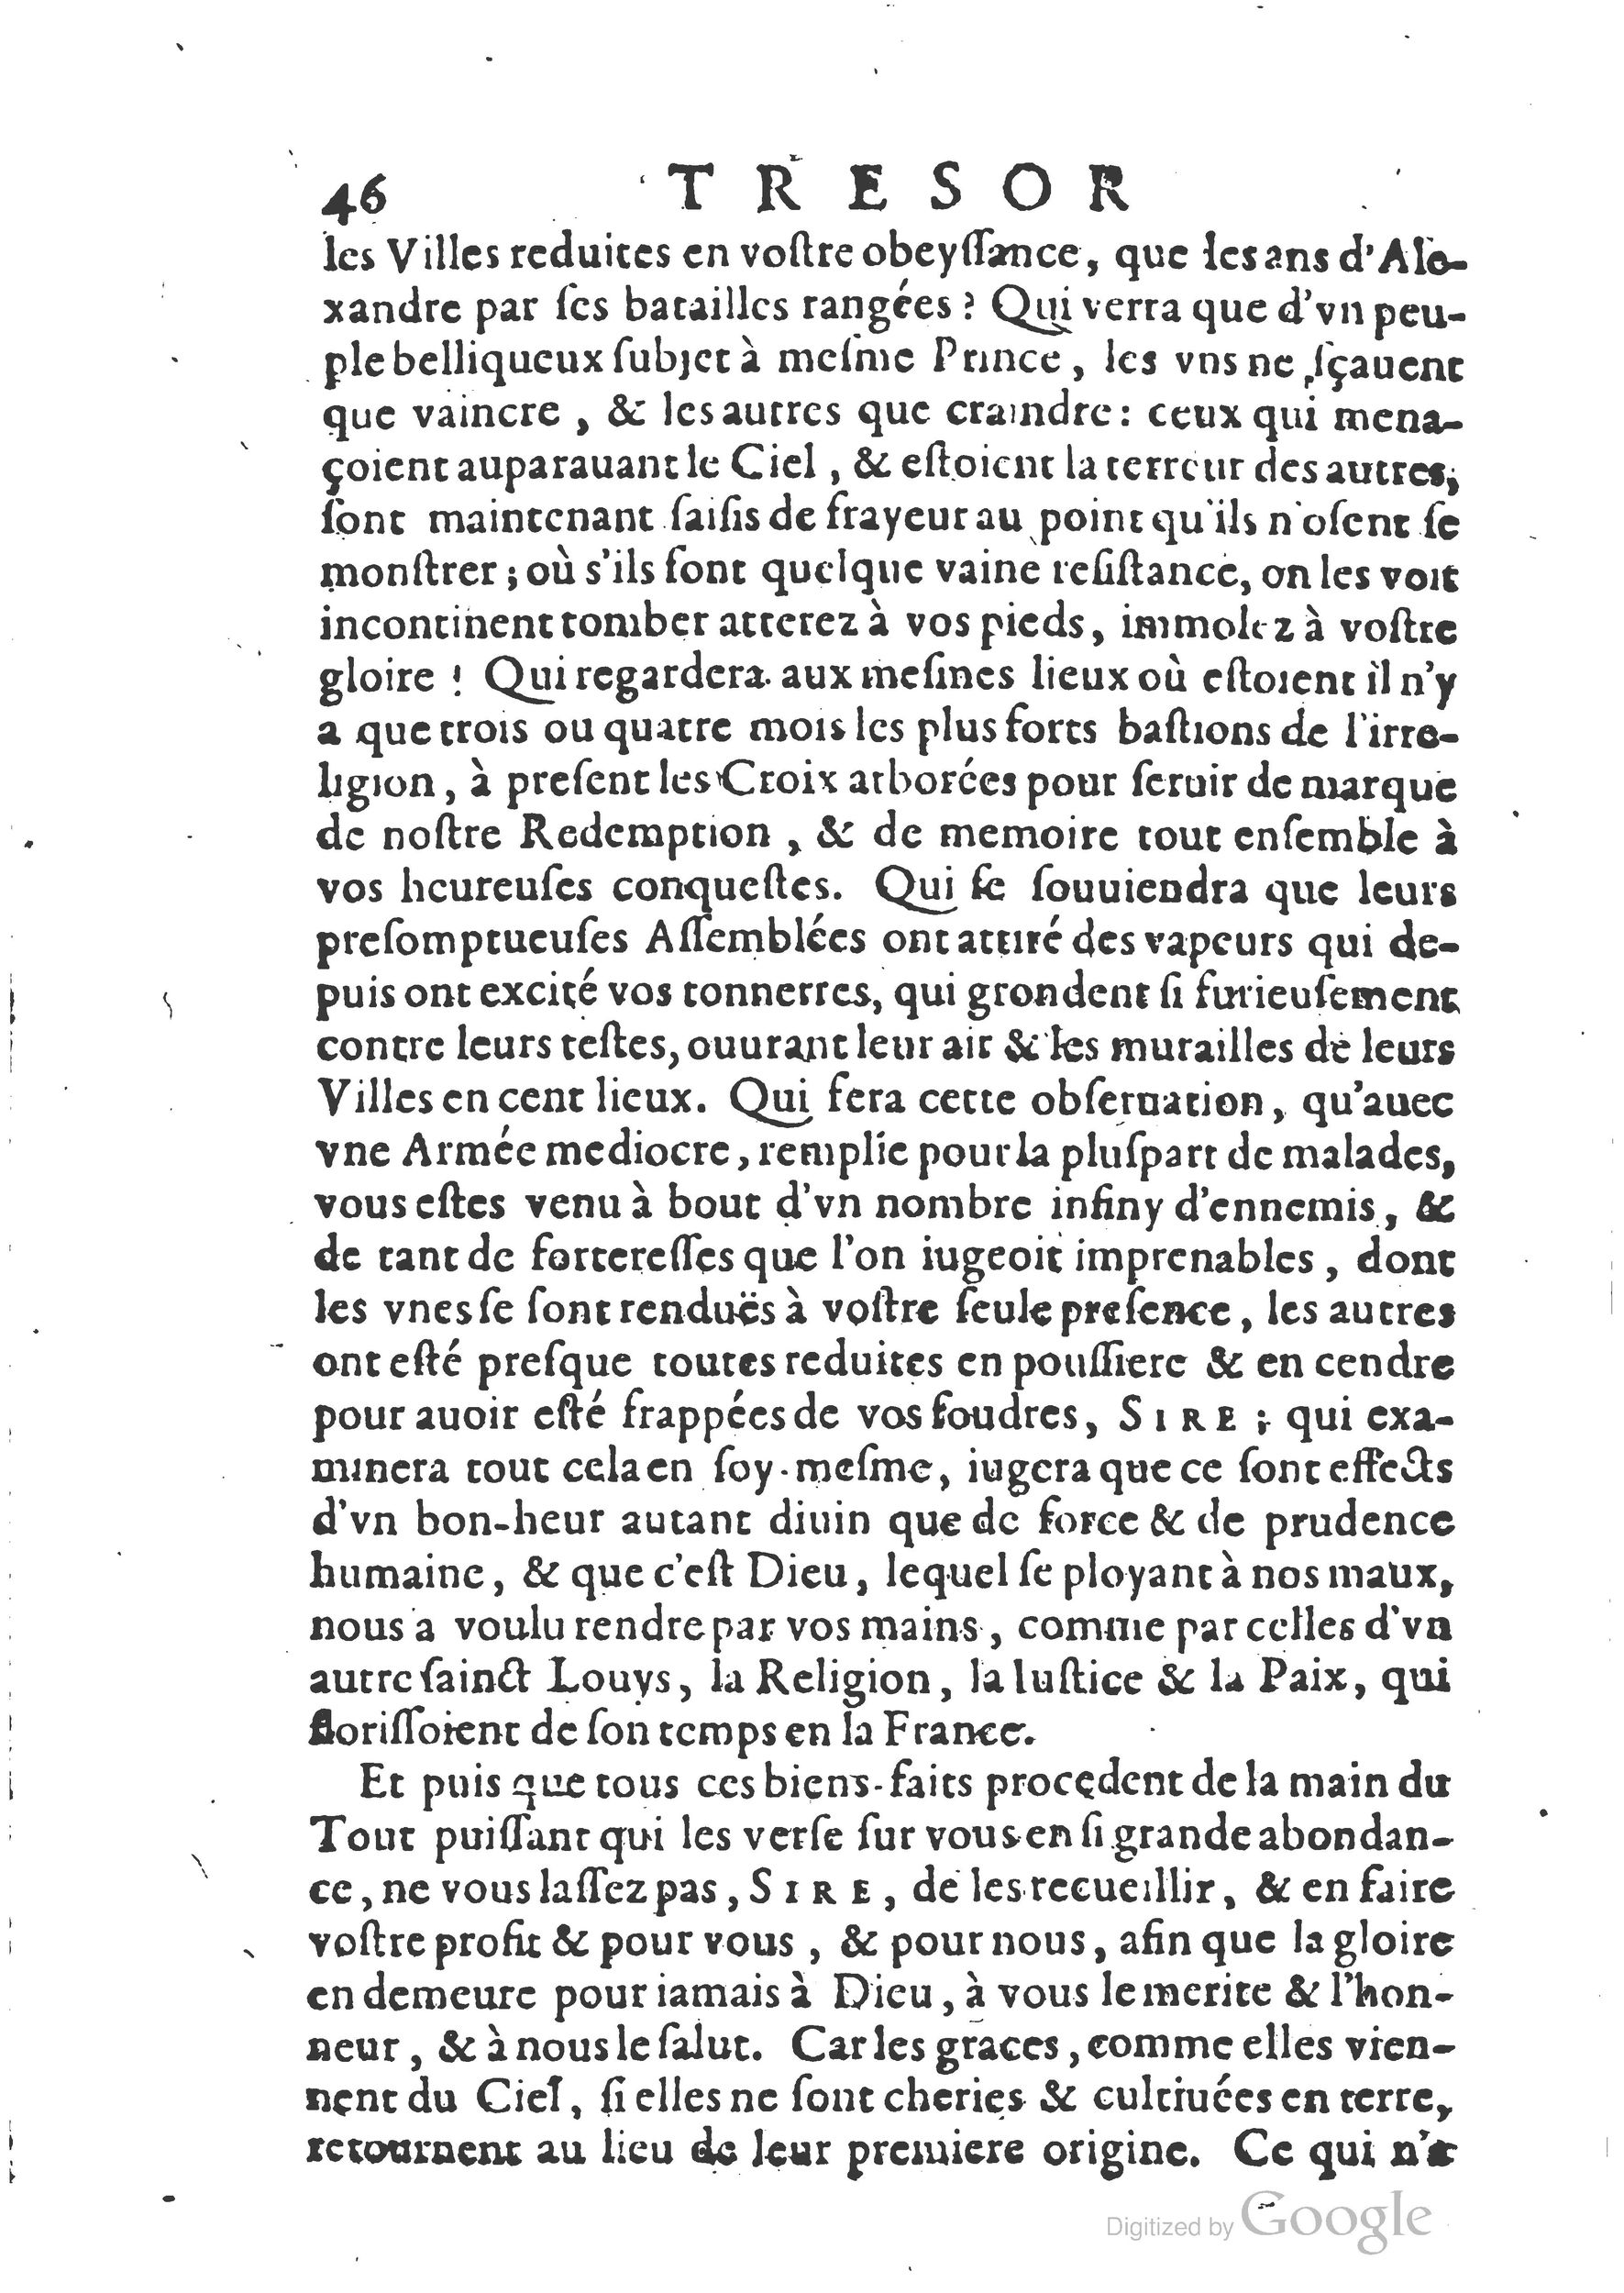 1654 Trésor des harangues, remontrances et oraisons funèbres Robin_BM Lyon_Page_297.jpg